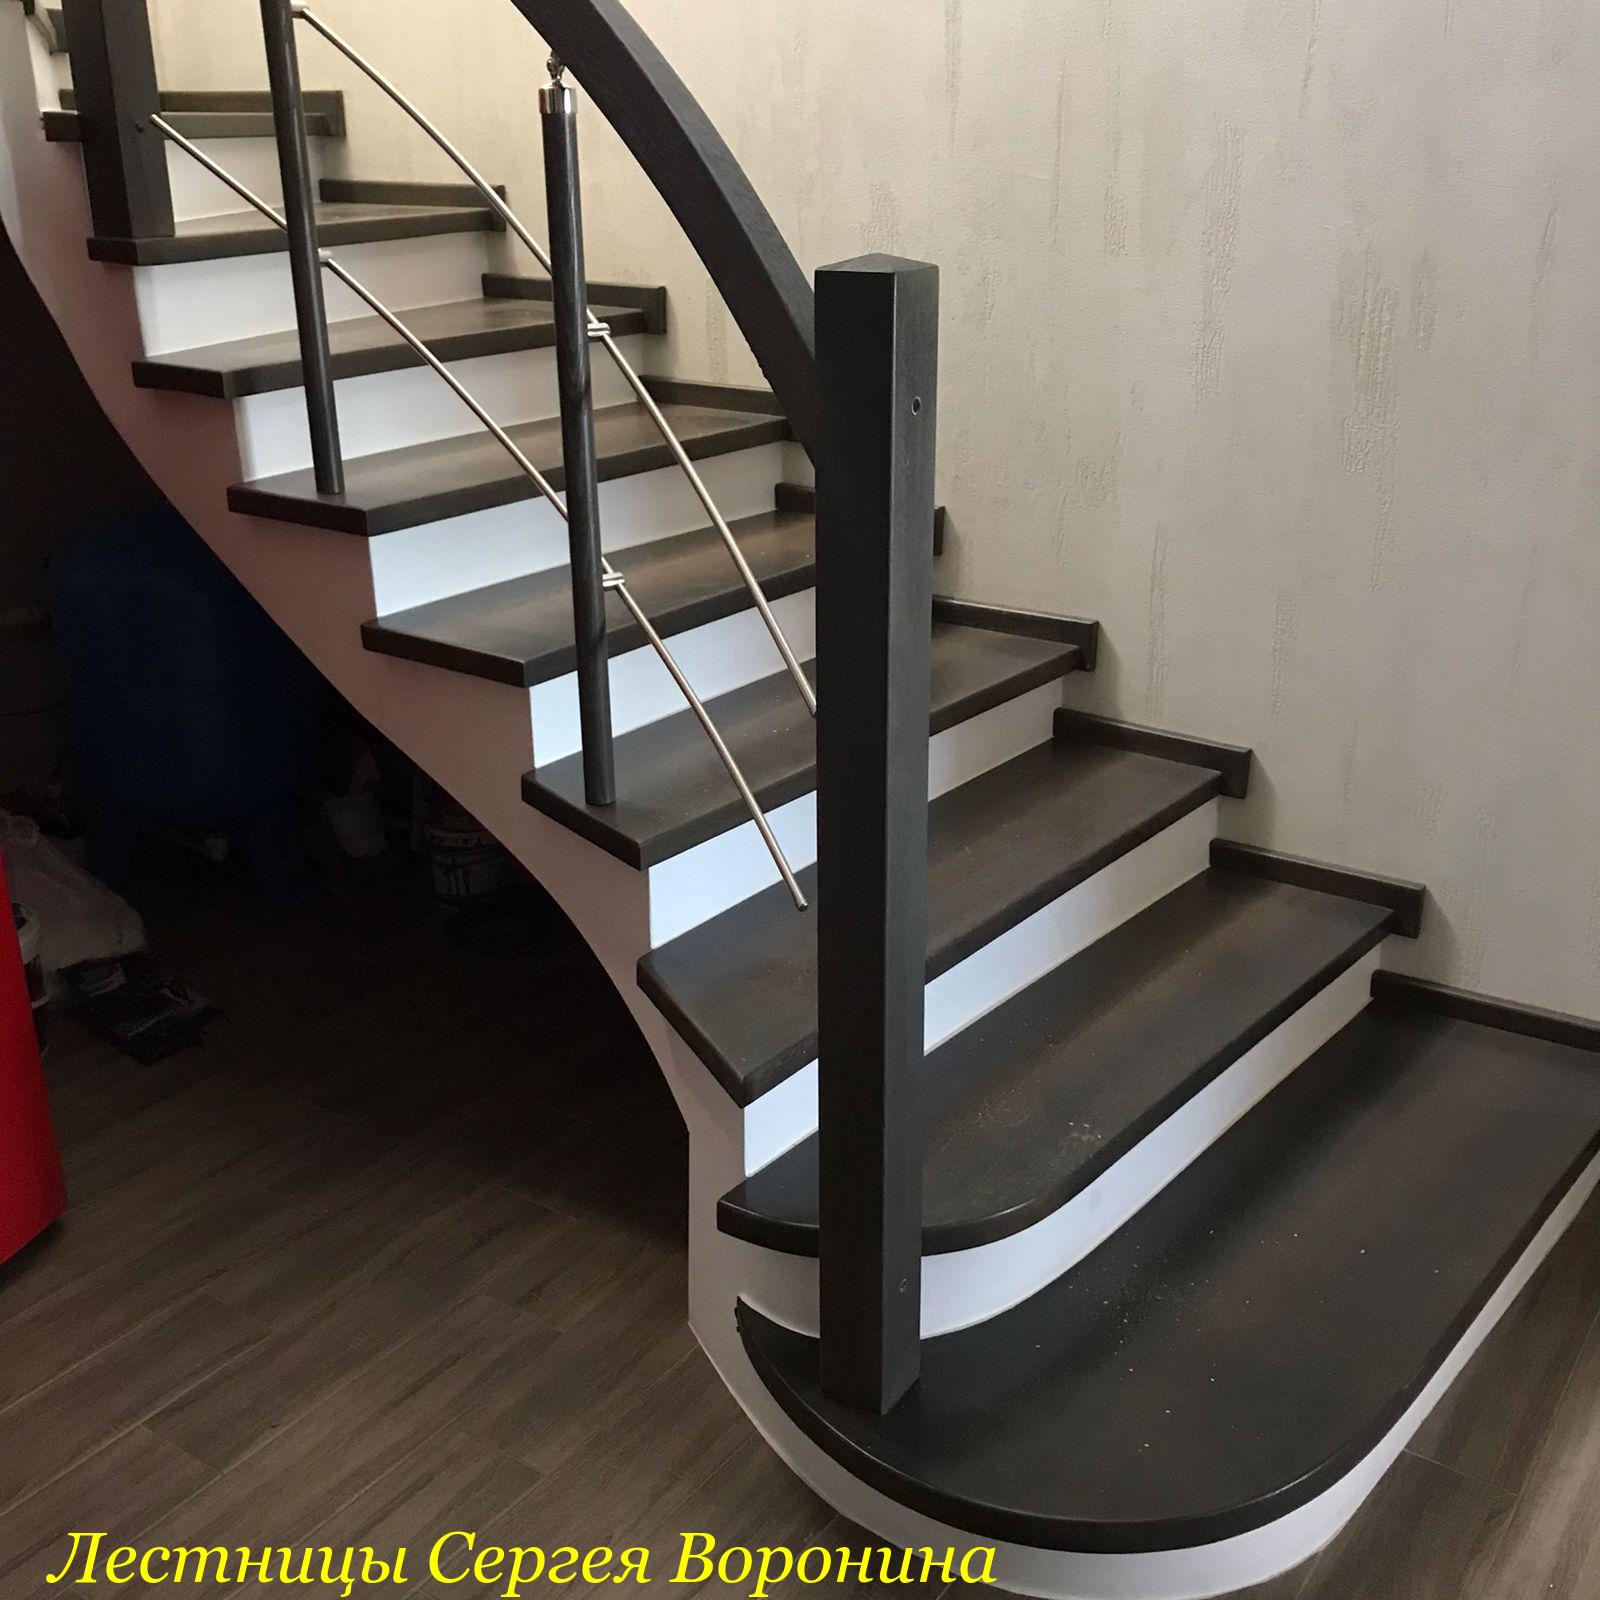 Межэтажные Лестницы Сергея Воронина, Воронеж - 1Отрадное